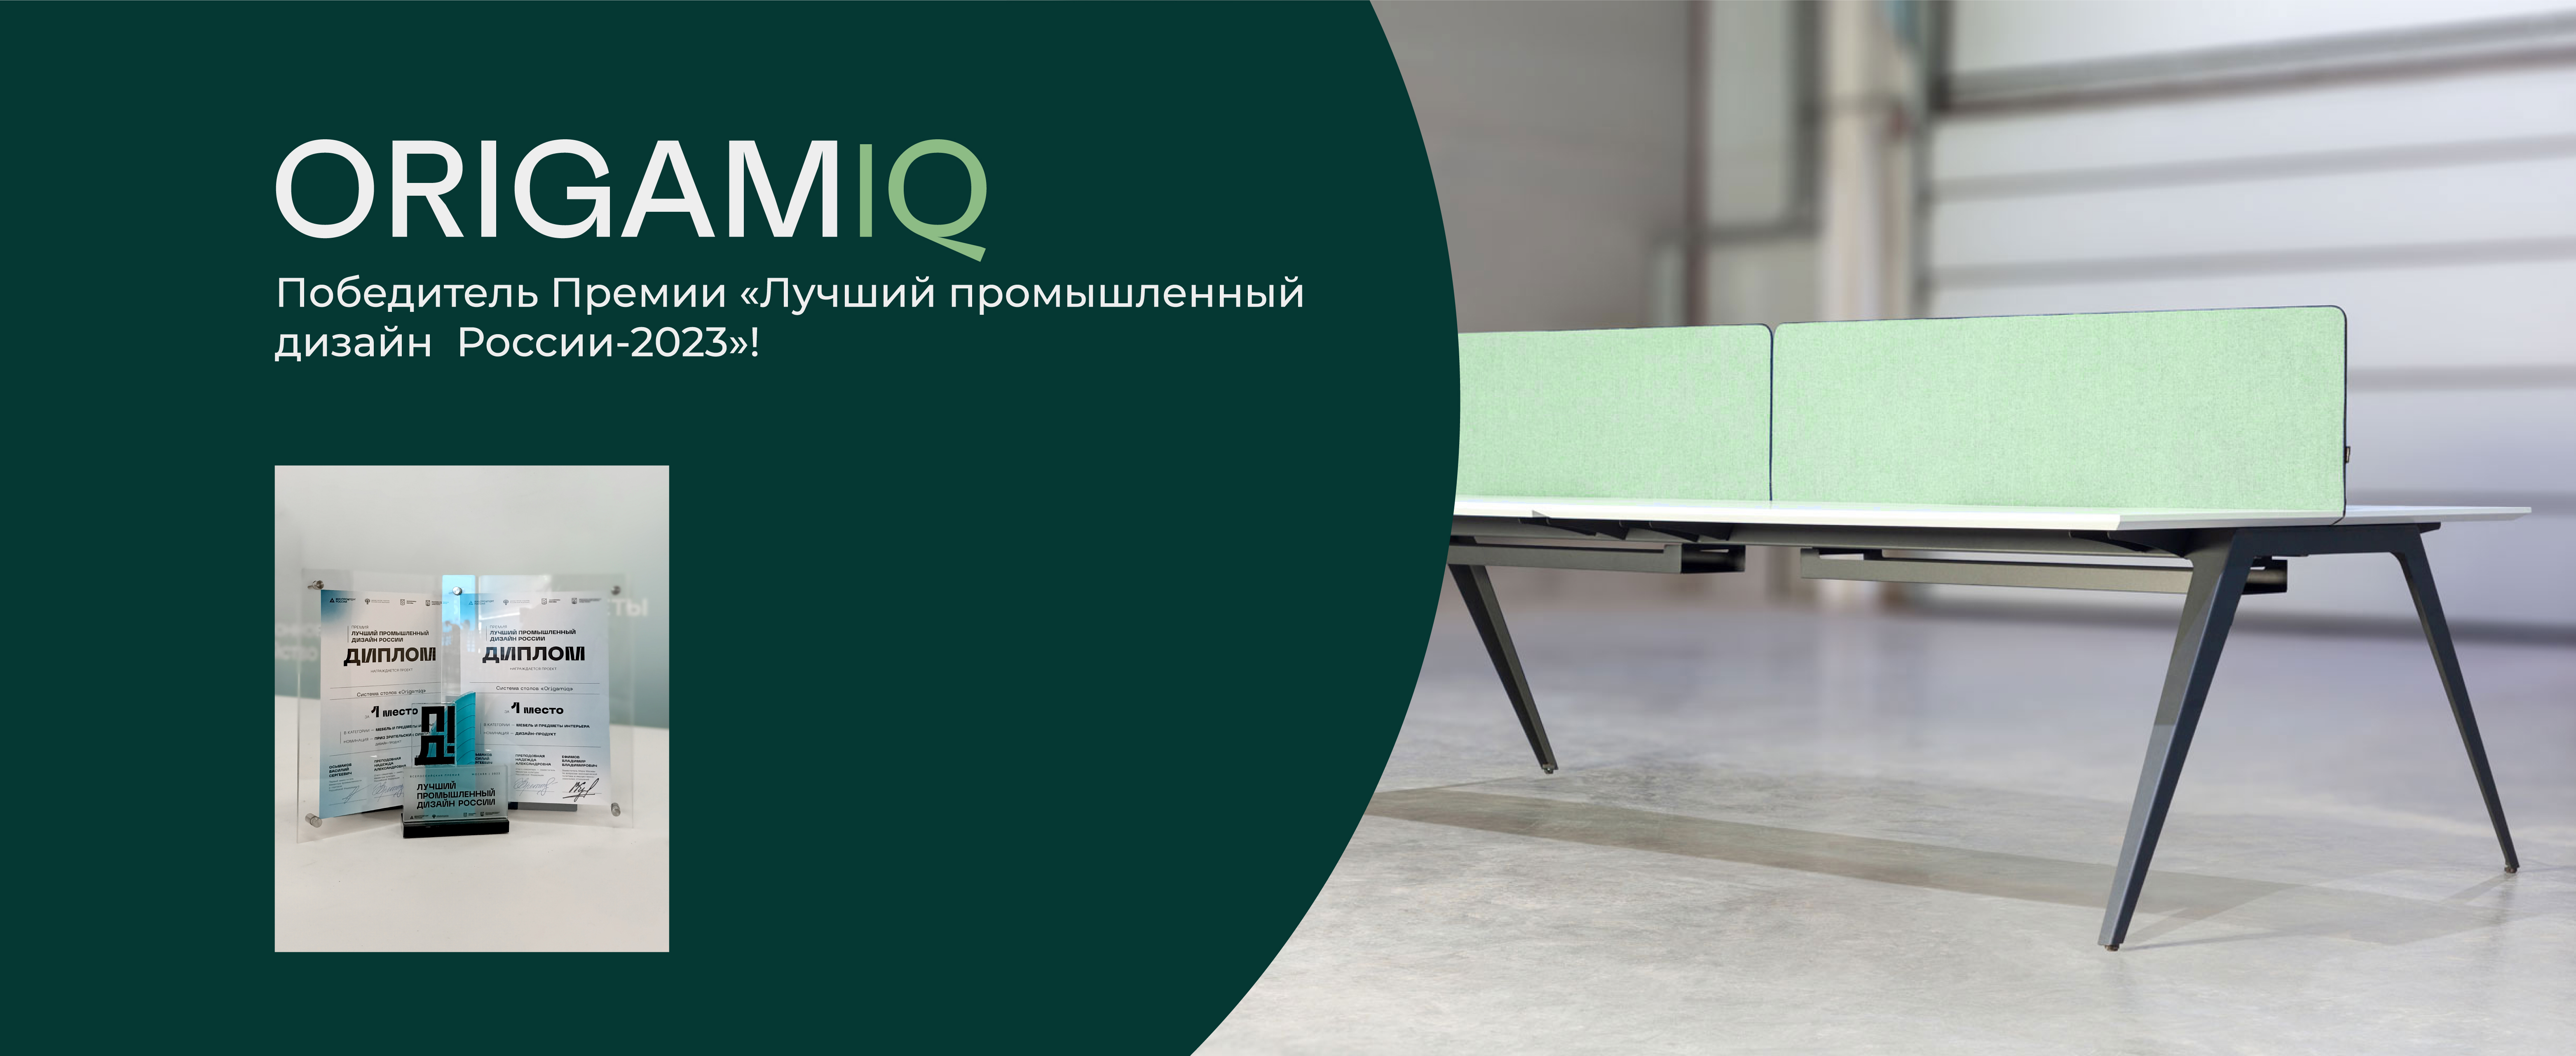 Система офисных столов OrigamIQ выиграла премию "Лучший промышленный дизайн России"